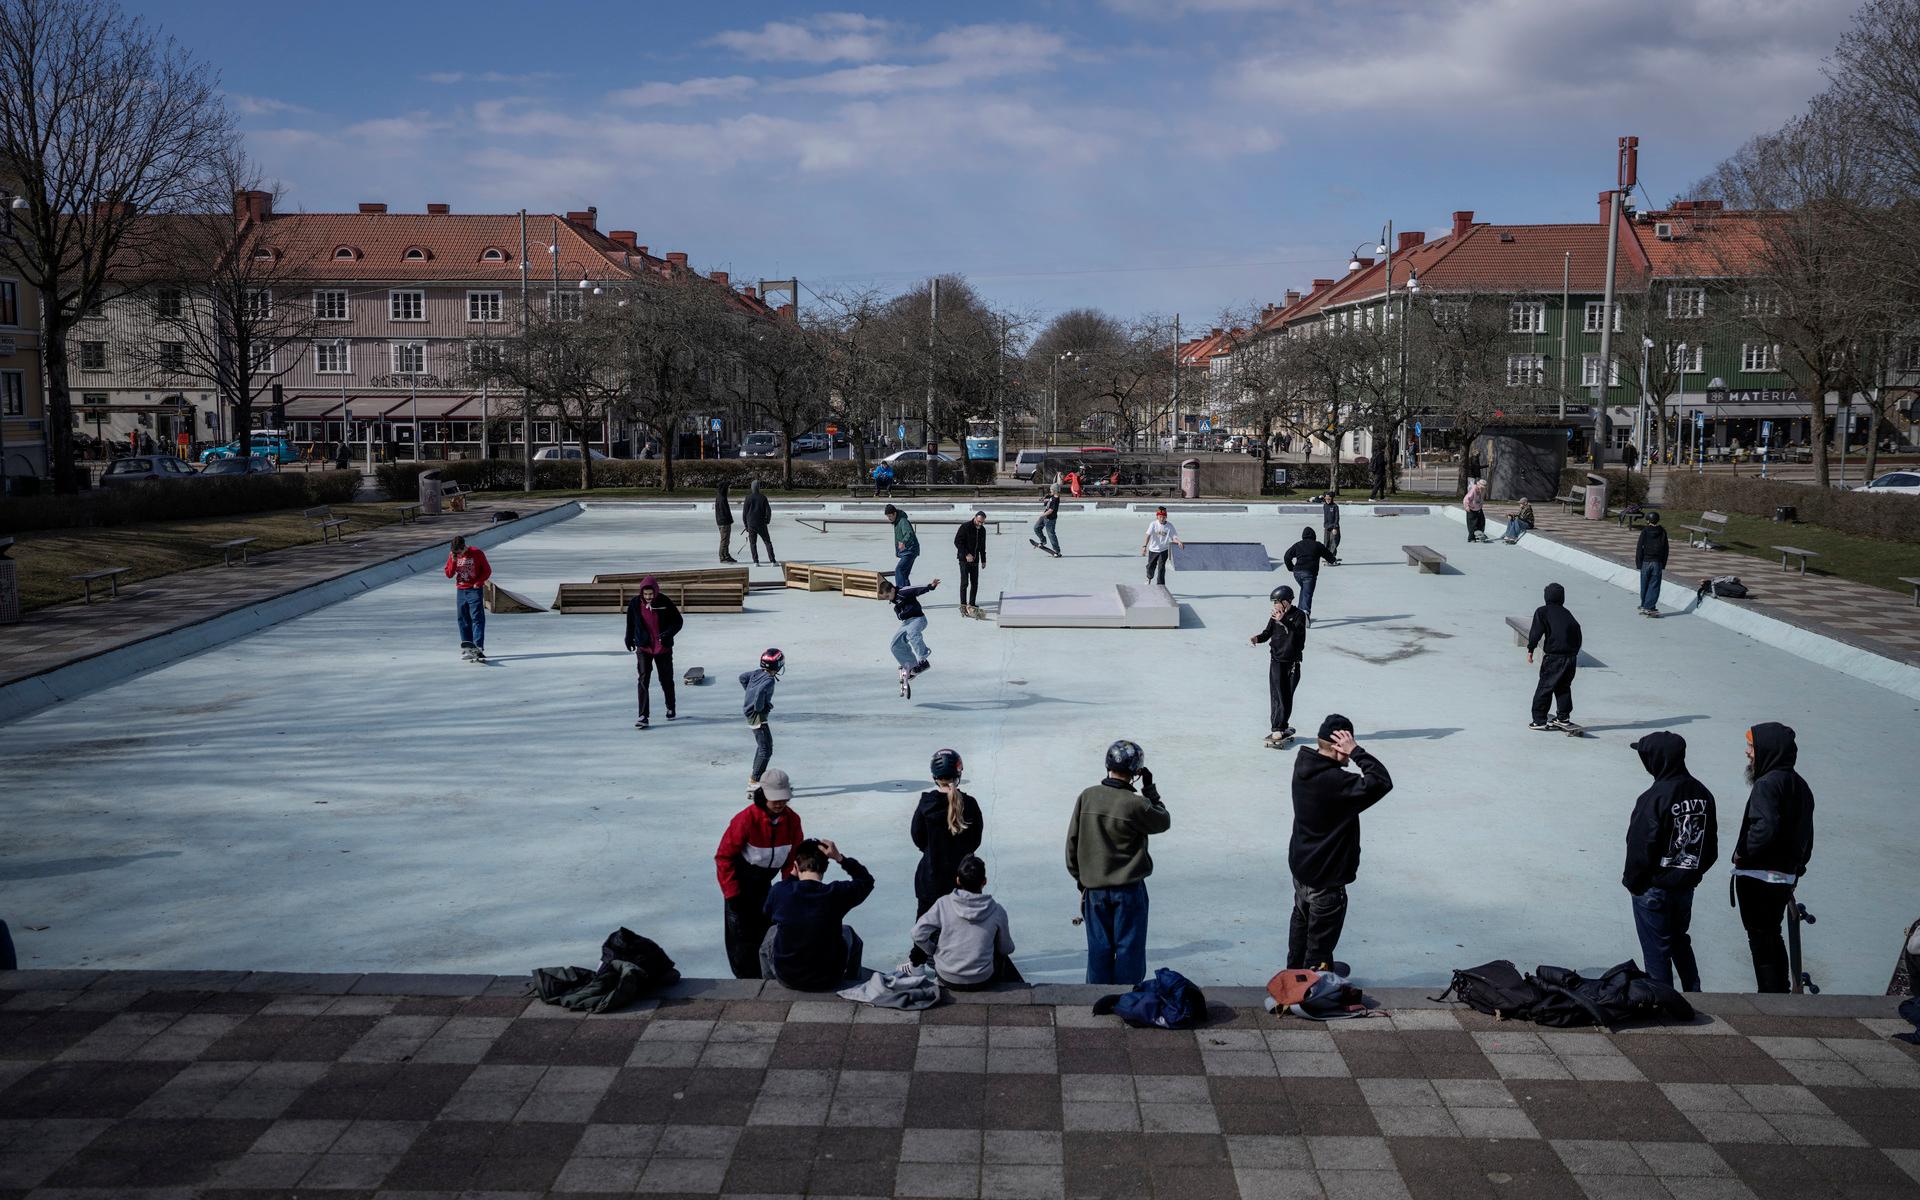 Plaskis är en av Göteborgs mest populära platser för skateboardåkare.